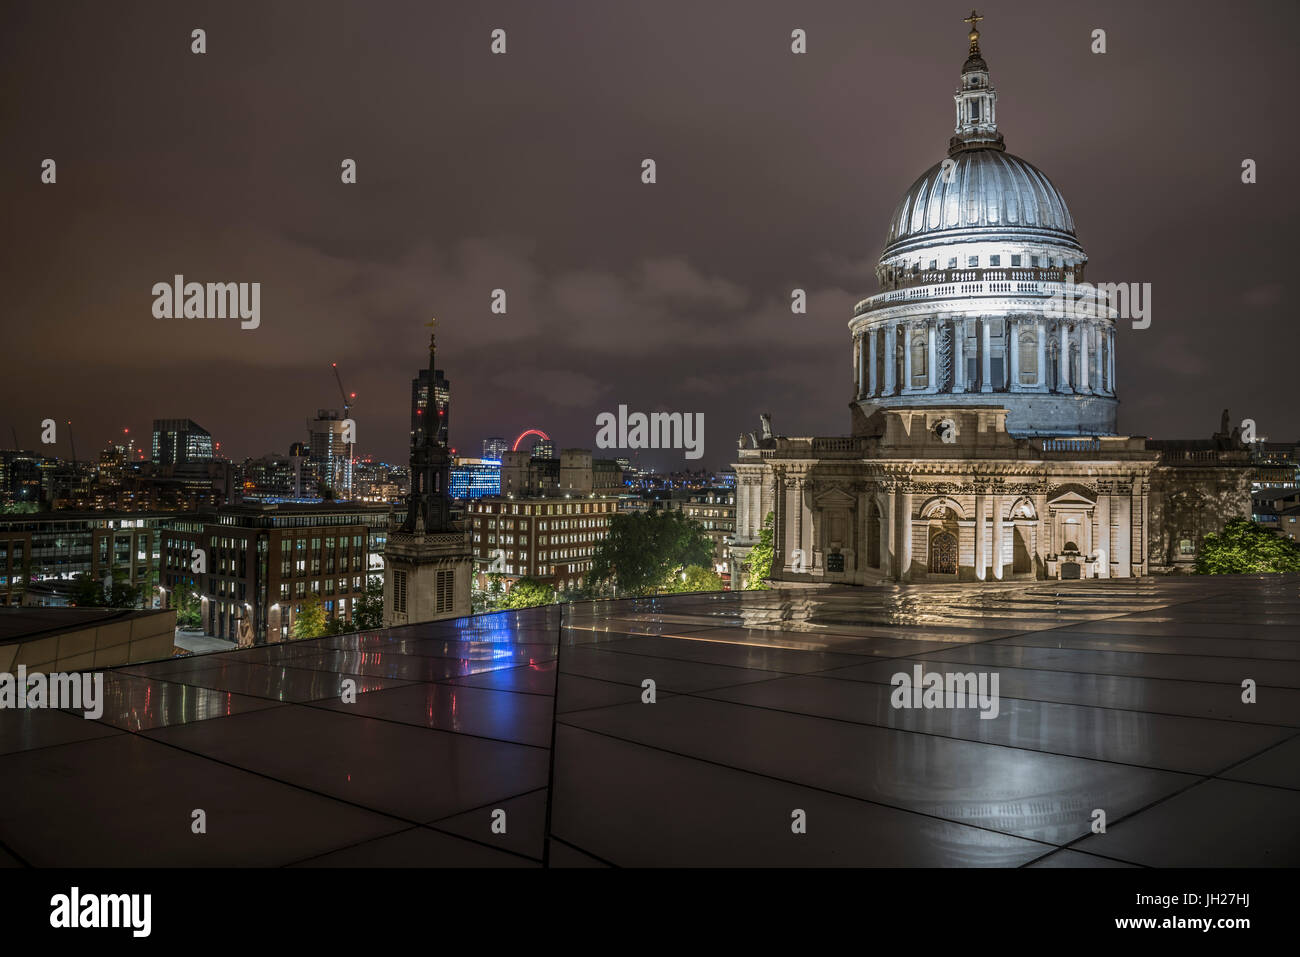 Courts de dôme de la Cathédrale St Paul de nuit d'un nouveau changement, City of London, Londres, Angleterre, Royaume-Uni, Europe Banque D'Images